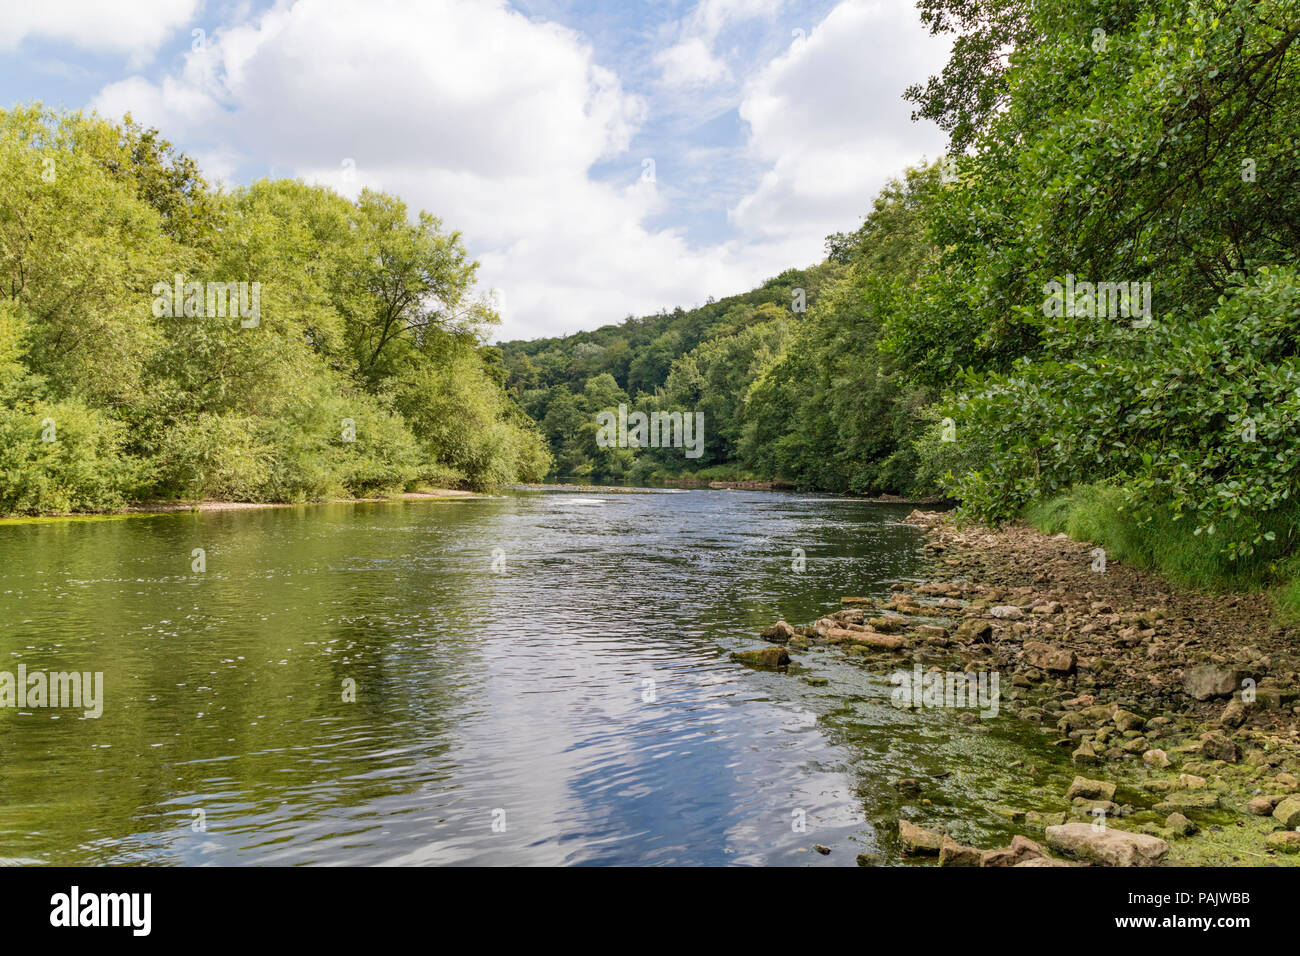 River Wye near Symonds Yat, Herefordshire, England, UK Stock Photo